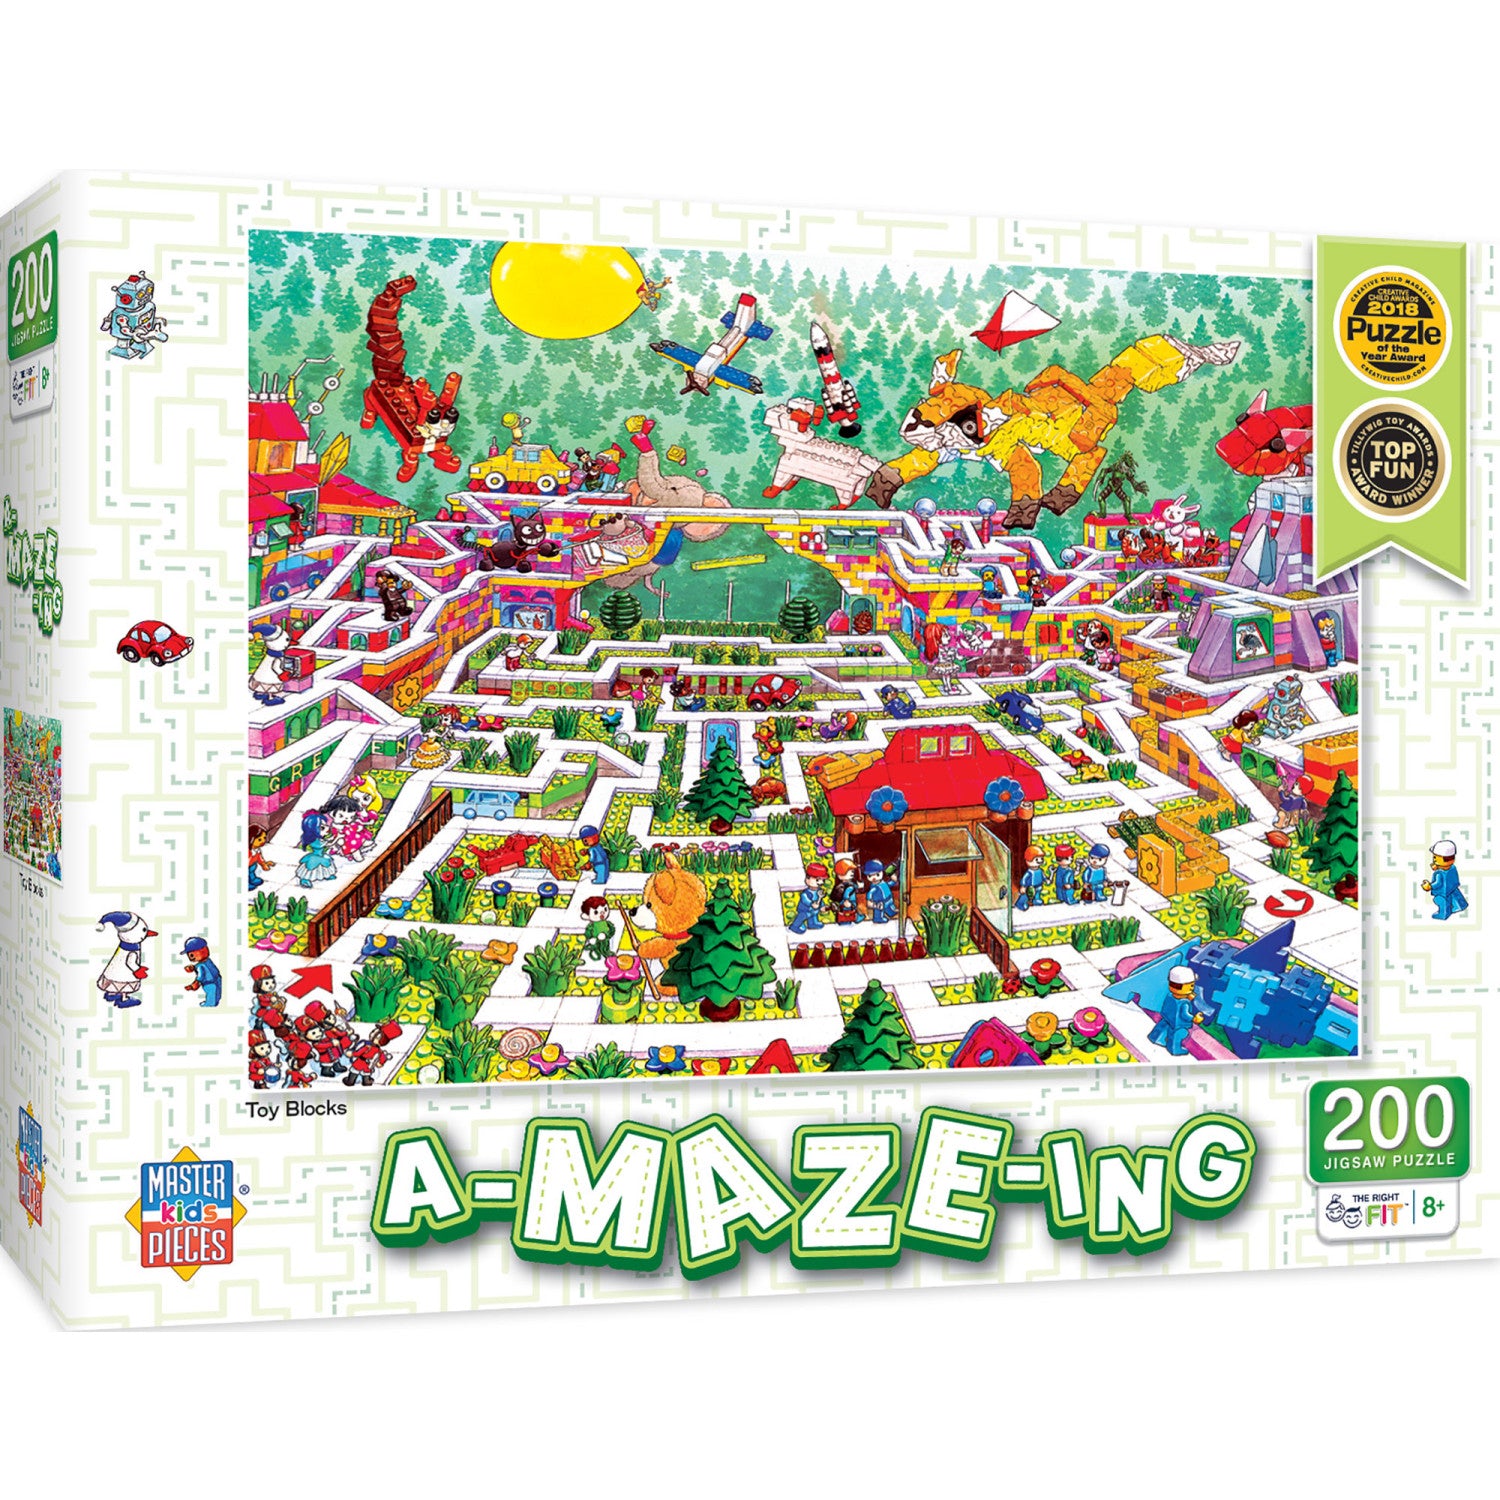 A-Maze-ing - Toy Blocks 200 Piece Jigsaw Puzzle